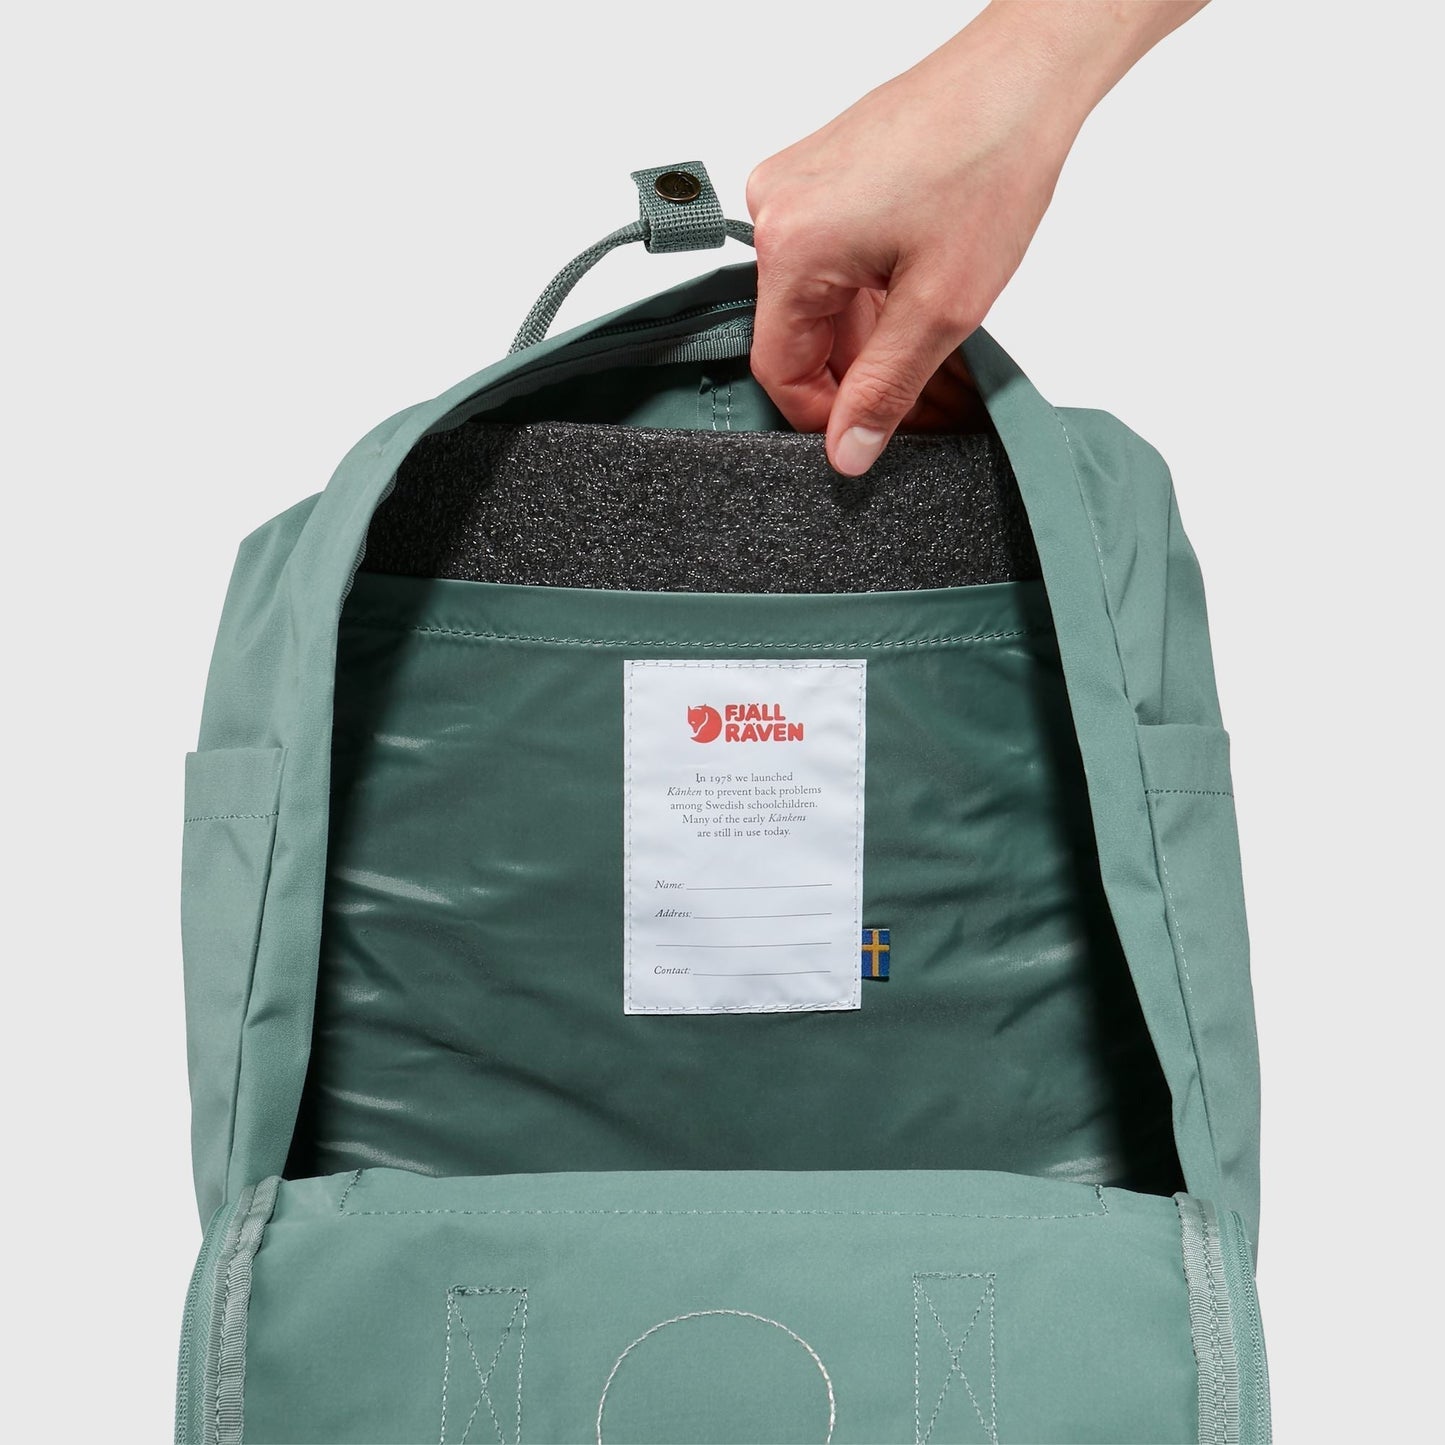 Fjallraven Kanken 狐狸袋 背囊 書包戶外背包 School bag outdoor backpack 16L - Pink / Long Stripes 23510-312-909